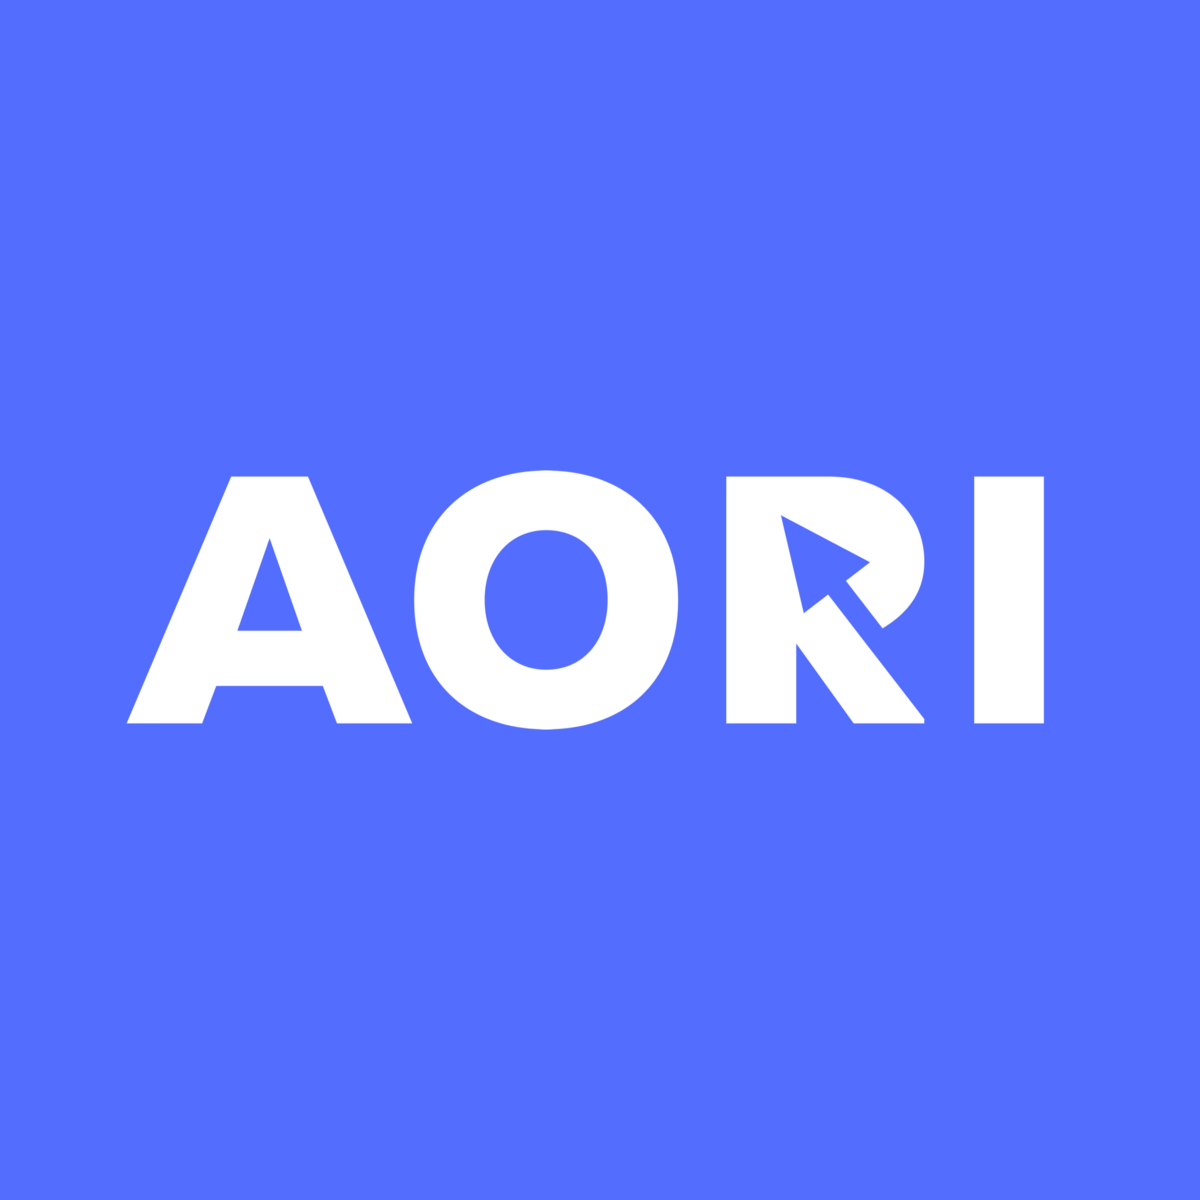 Promocode Direct to 10000 rub. Aori ✅